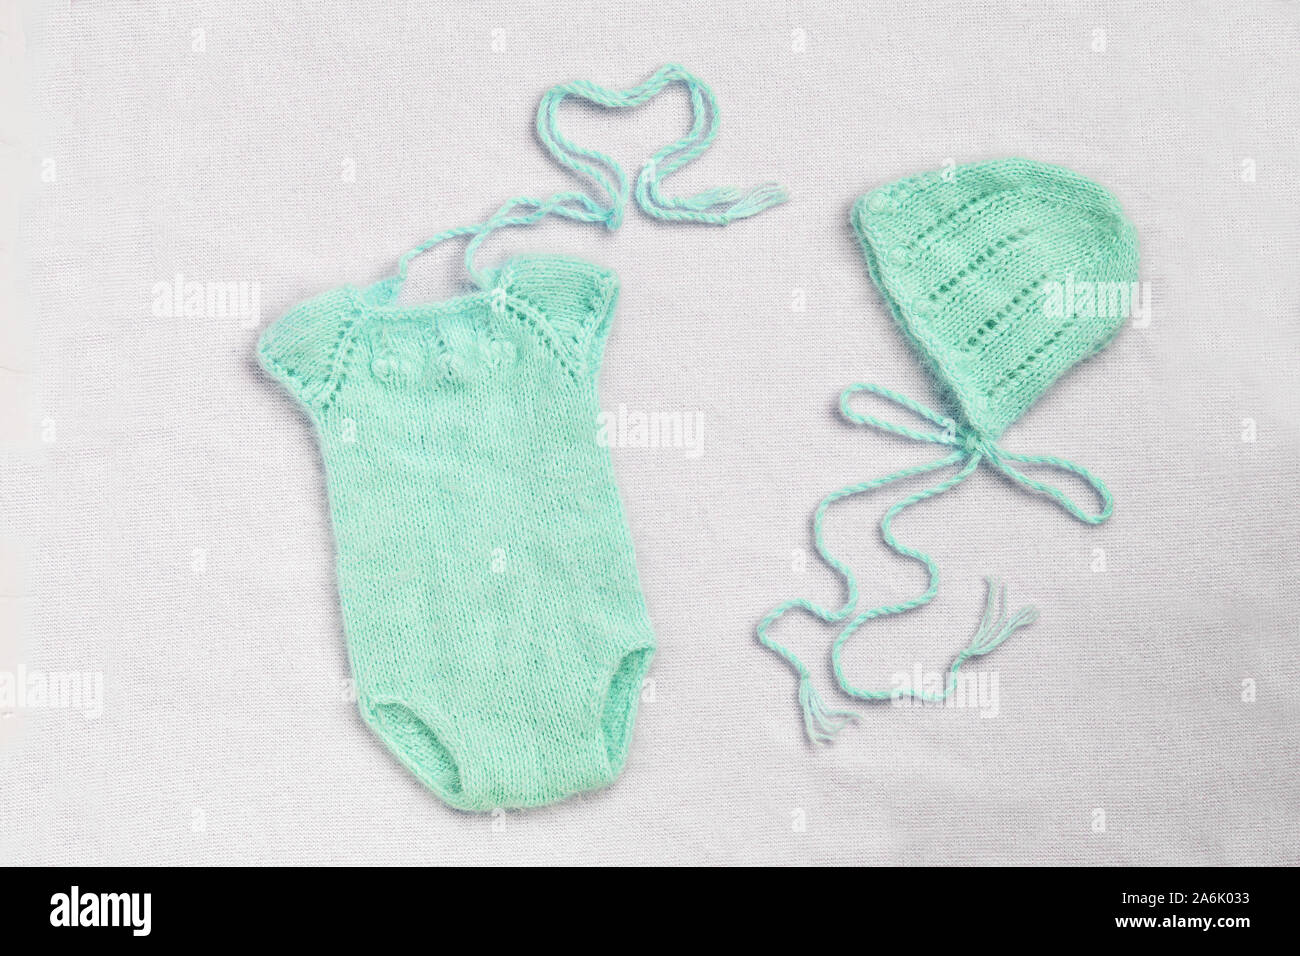 Baby Kleidung für Neugeborene in Türkis pastell Farben auf Wolle  Hintergrund. Set von Baby Kleidung. Körper, hat für Neugeborene  Stockfotografie - Alamy